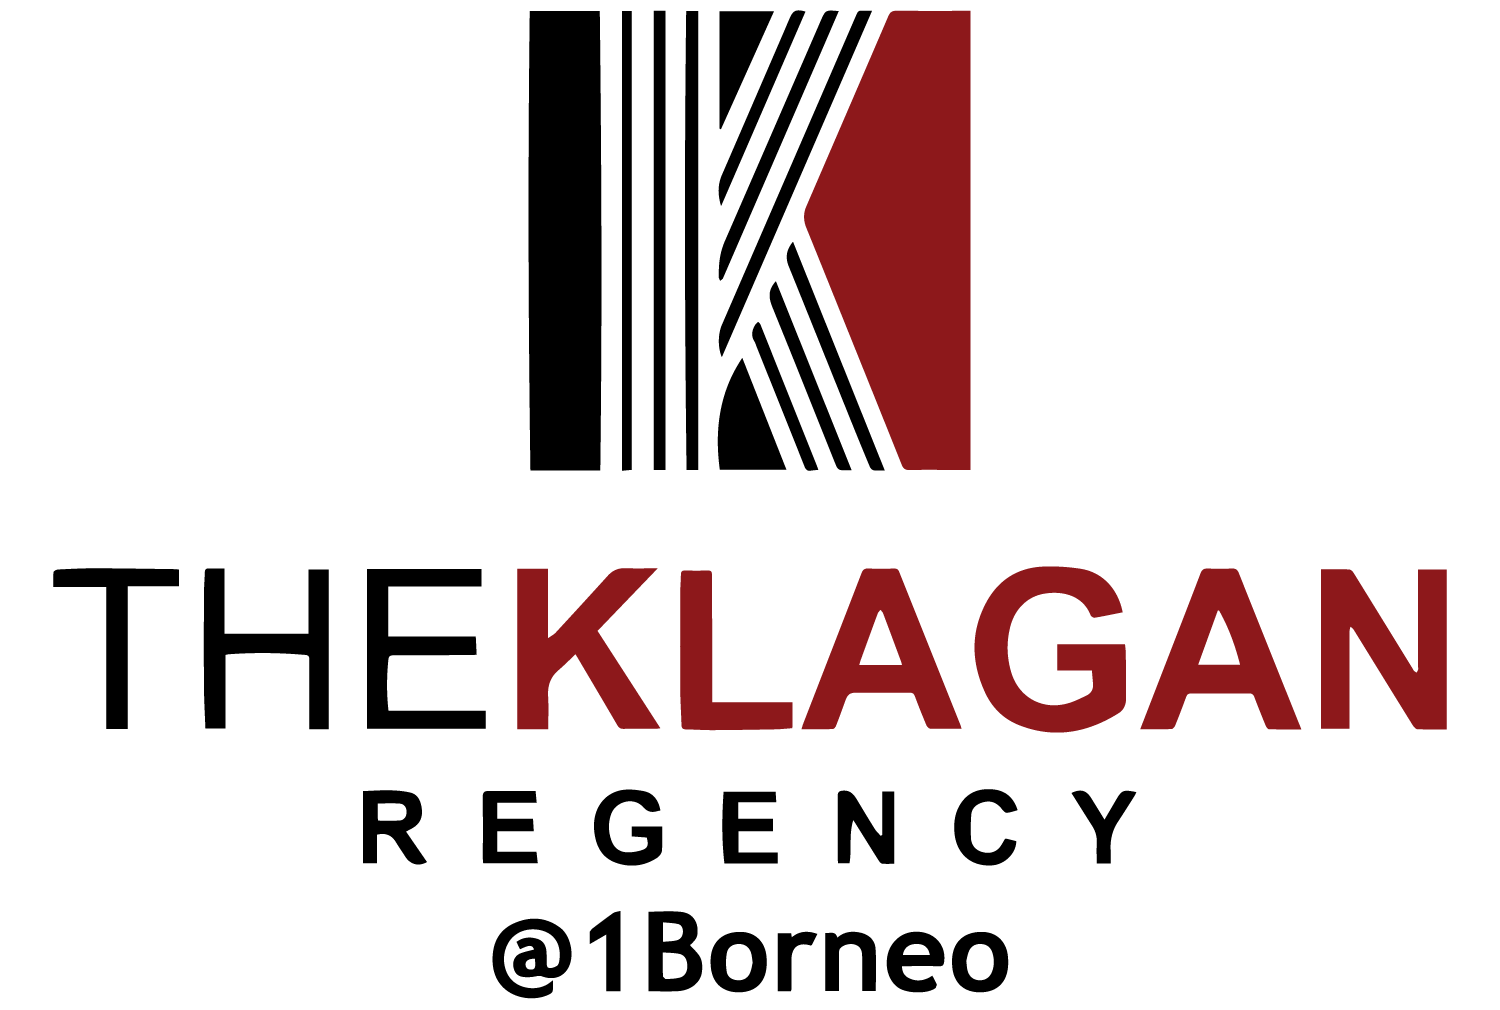 The Klagan Logo